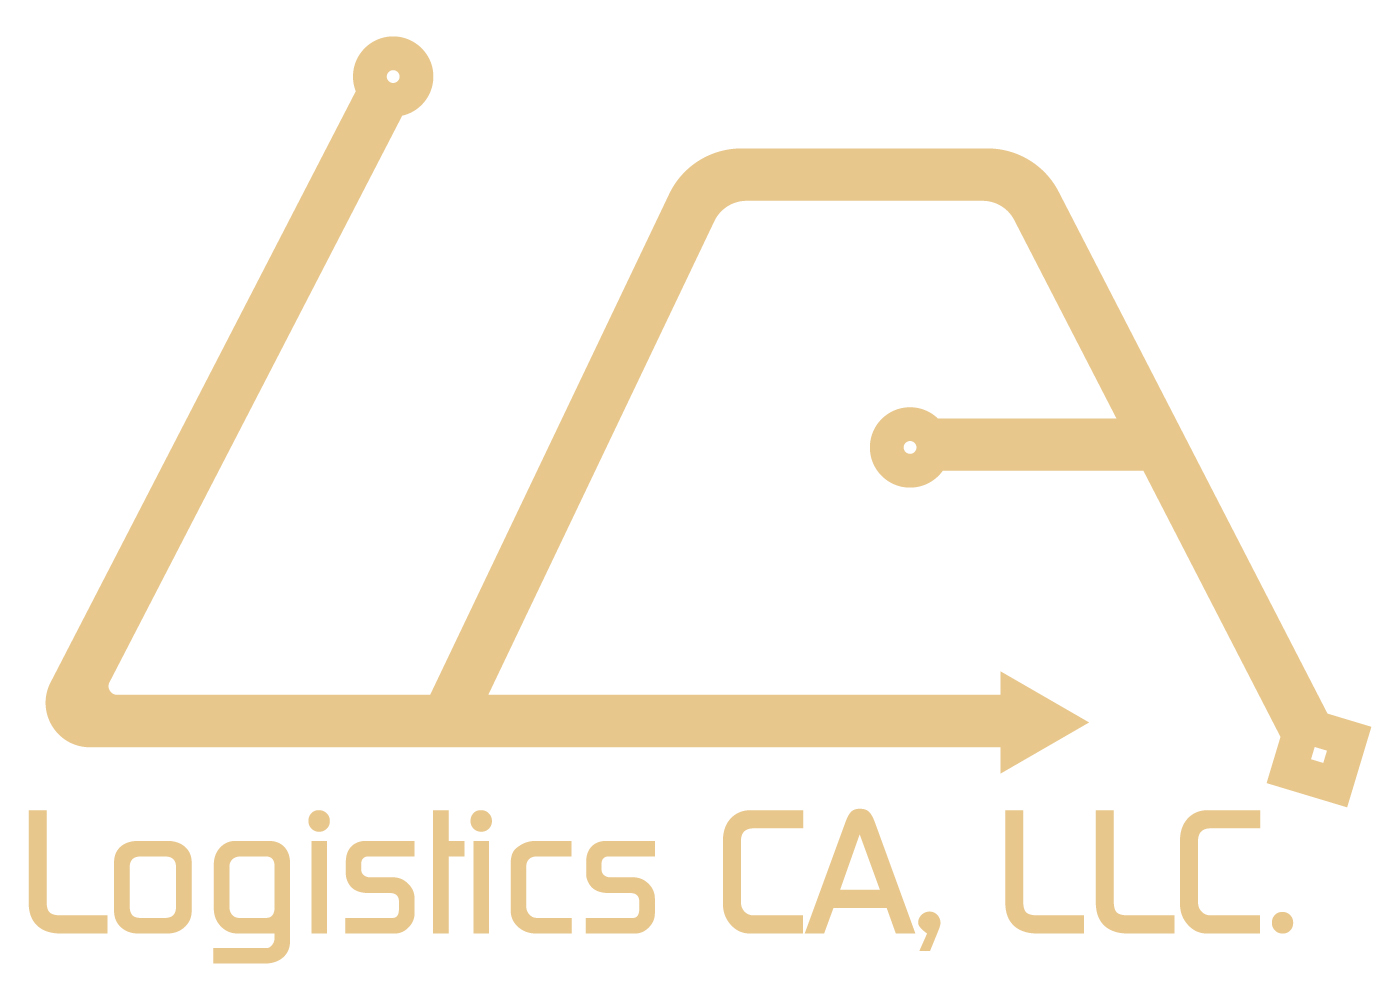 LOGISTICS CALIFORNIA, LLC